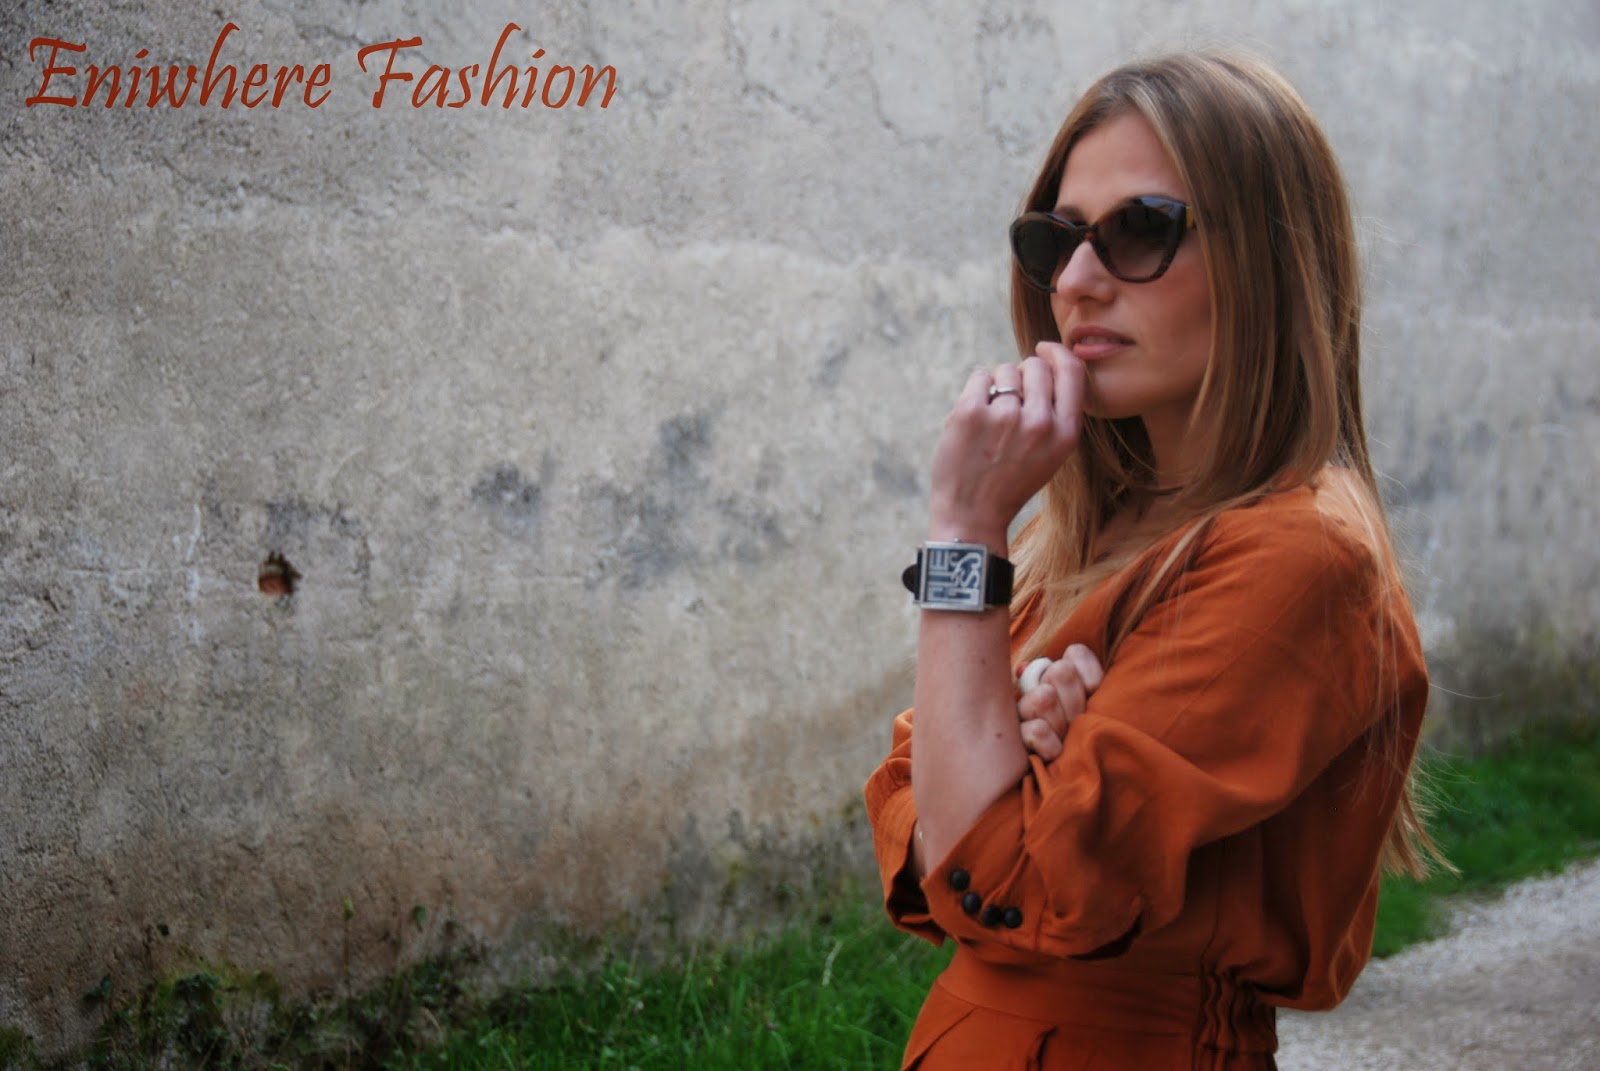 Eniwhere Fashion Beatrice Terzi